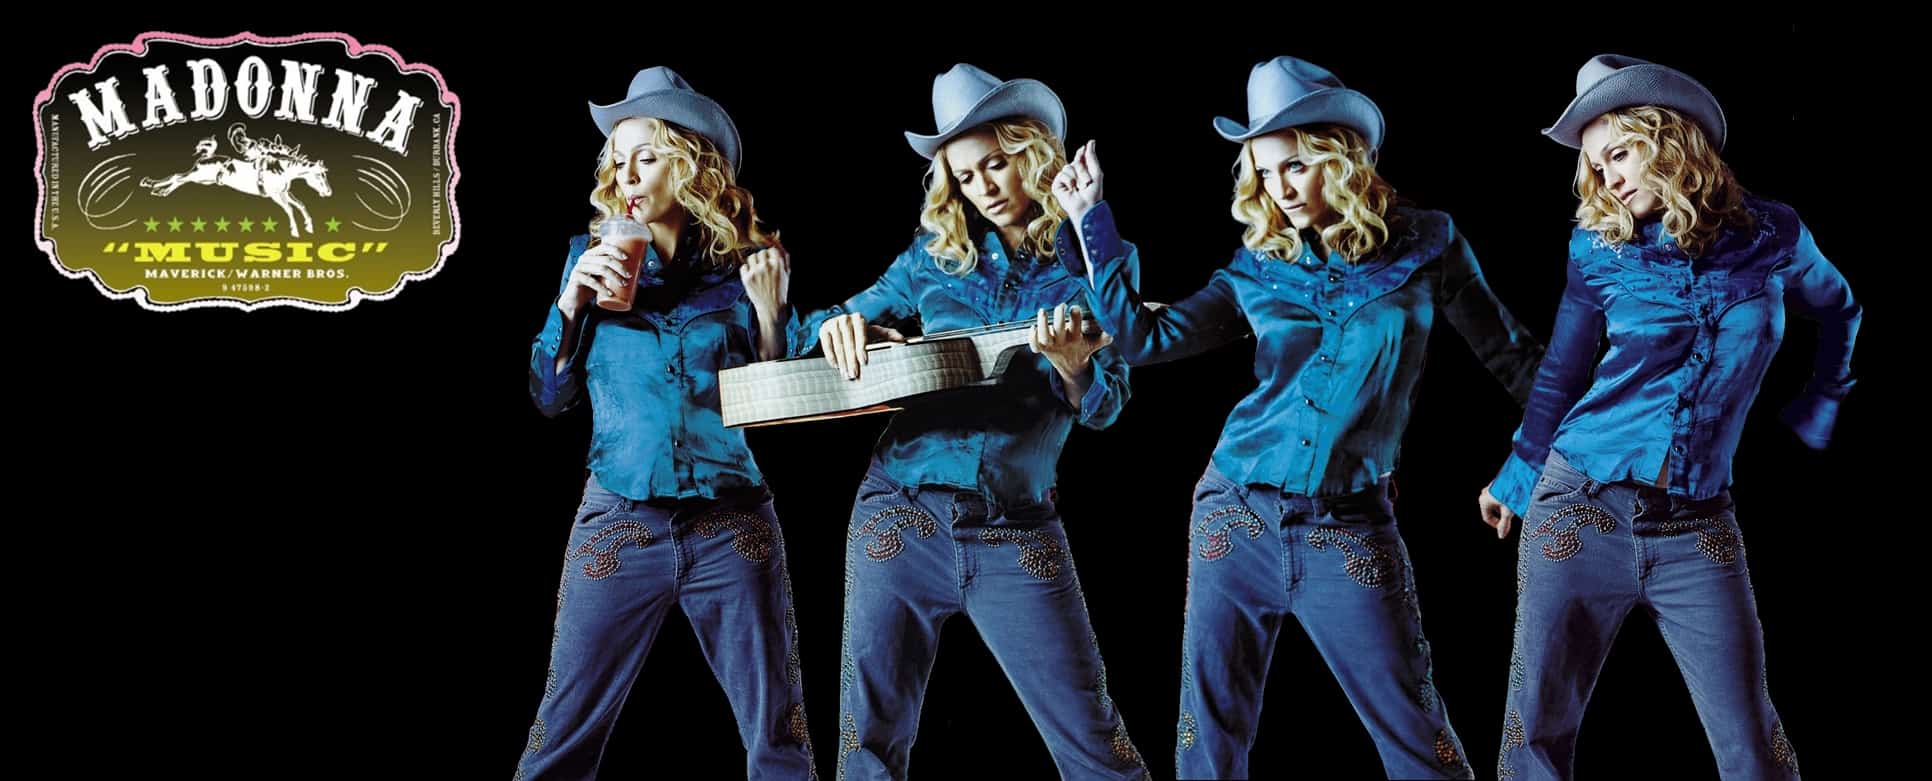 Critique musicale Pop | Madonna Musique